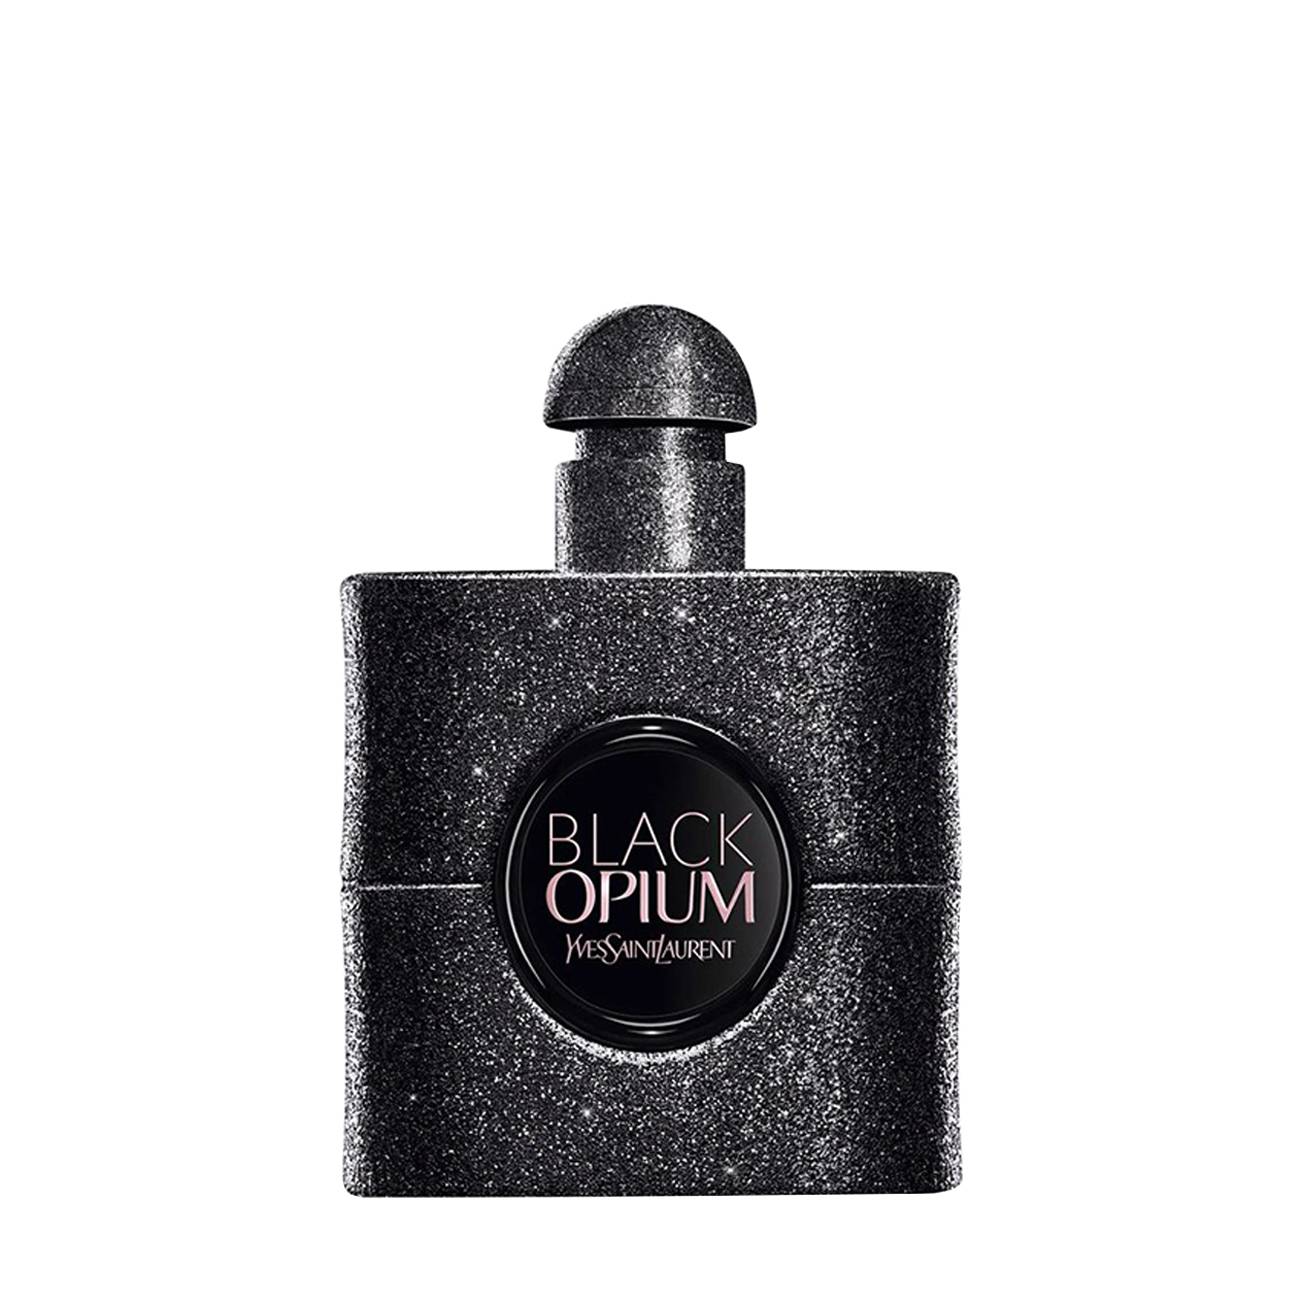 BLACK OPIUM EXTREME 50 ml original Yves Saint Laurent bestvalue